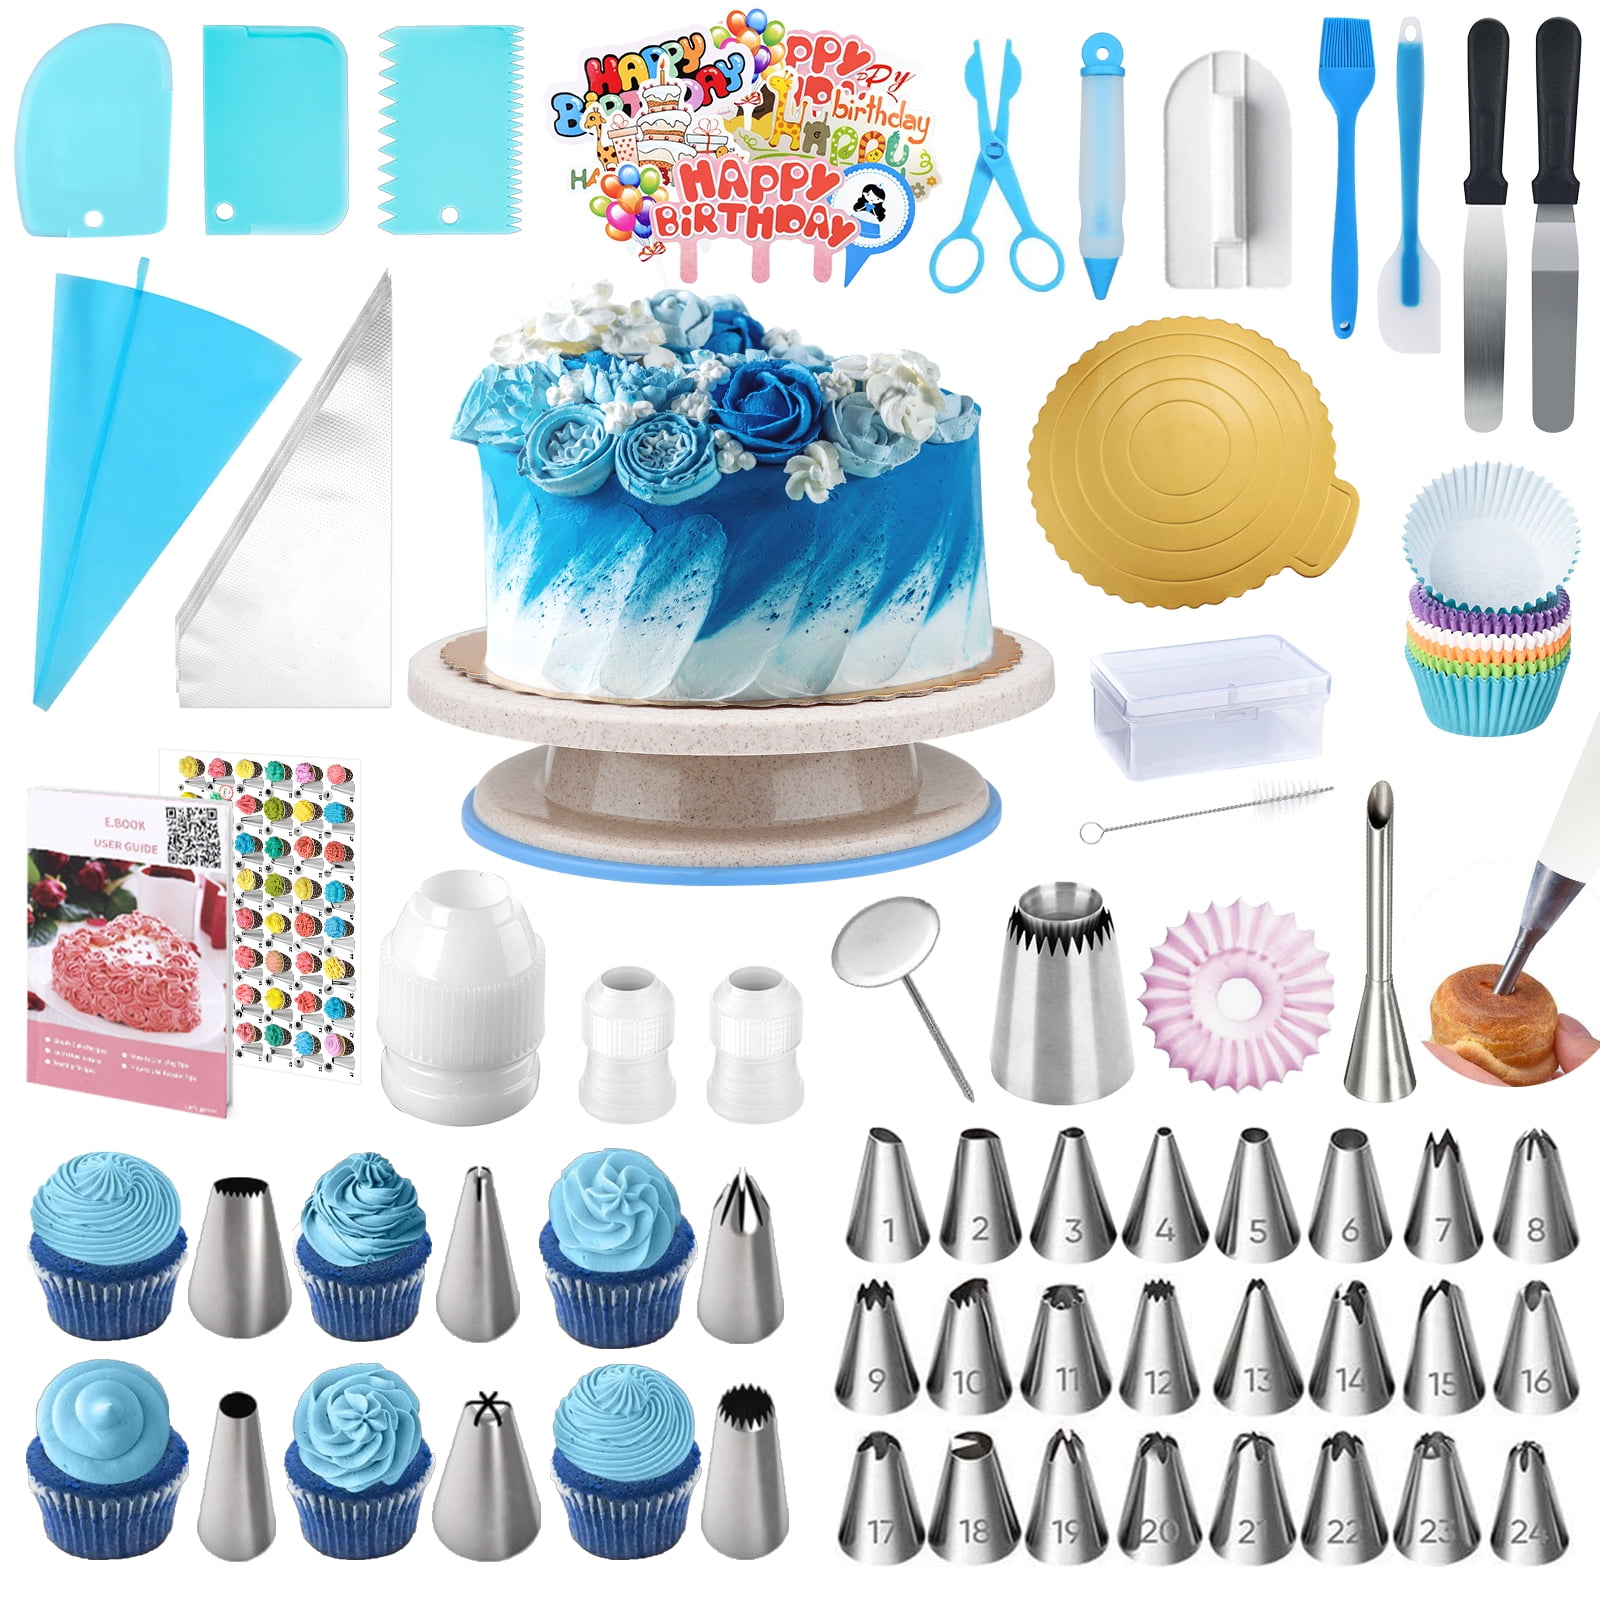 150pcs Cake Decorating Supplies Set,Cupcake Decorating Kit Baking